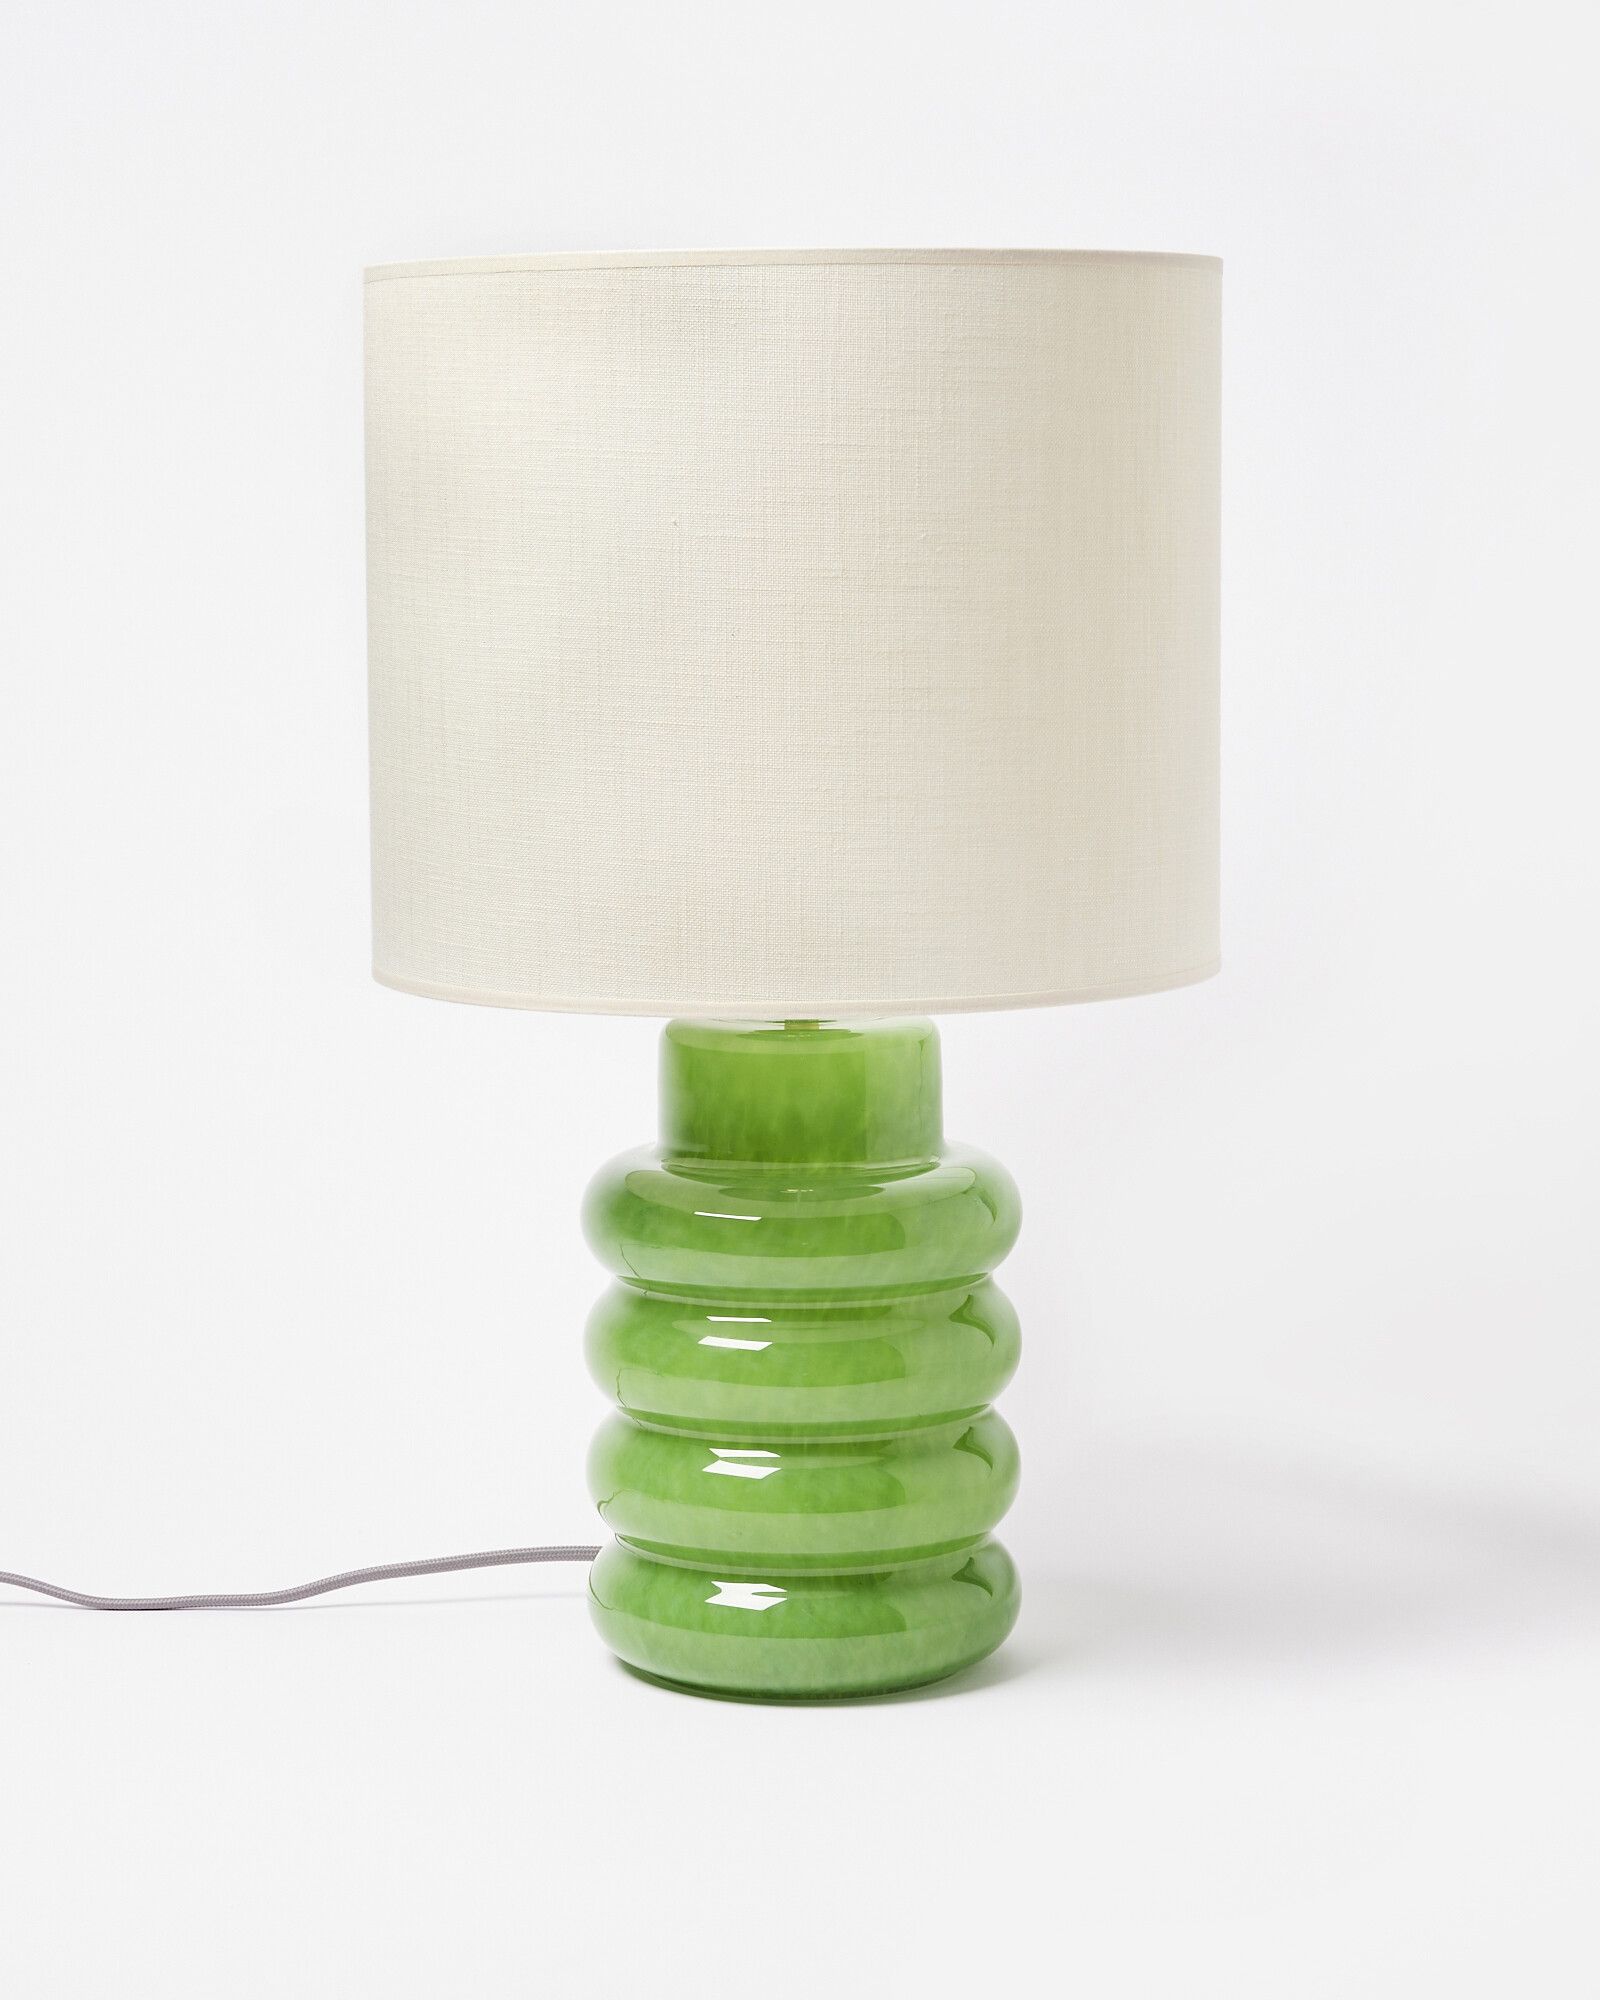 Clark Green Glass Desk & Table Lamp | Oliver Bonas